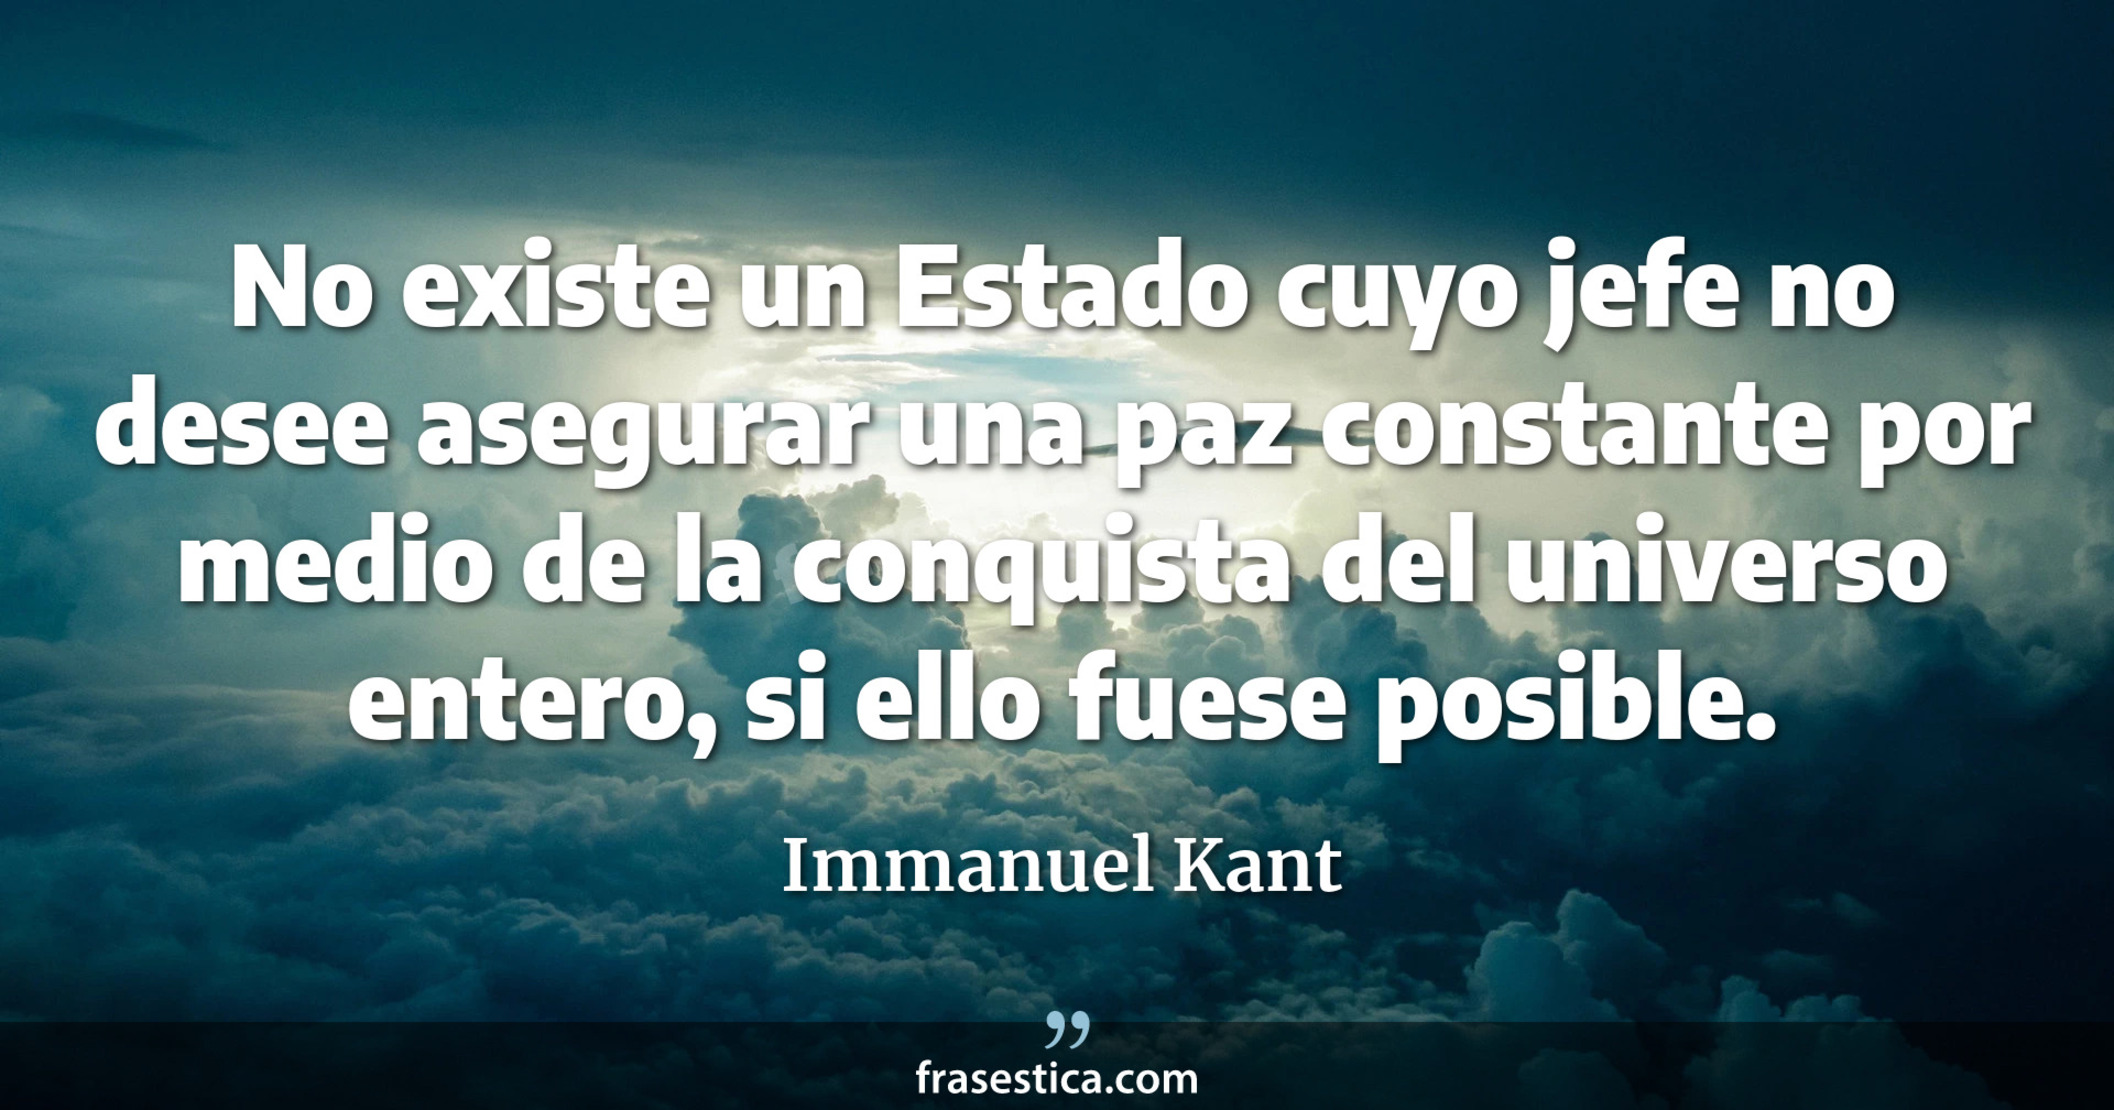 No existe un Estado cuyo jefe no desee asegurar una paz constante por medio de la conquista del universo entero, si ello fuese posible. - Immanuel Kant